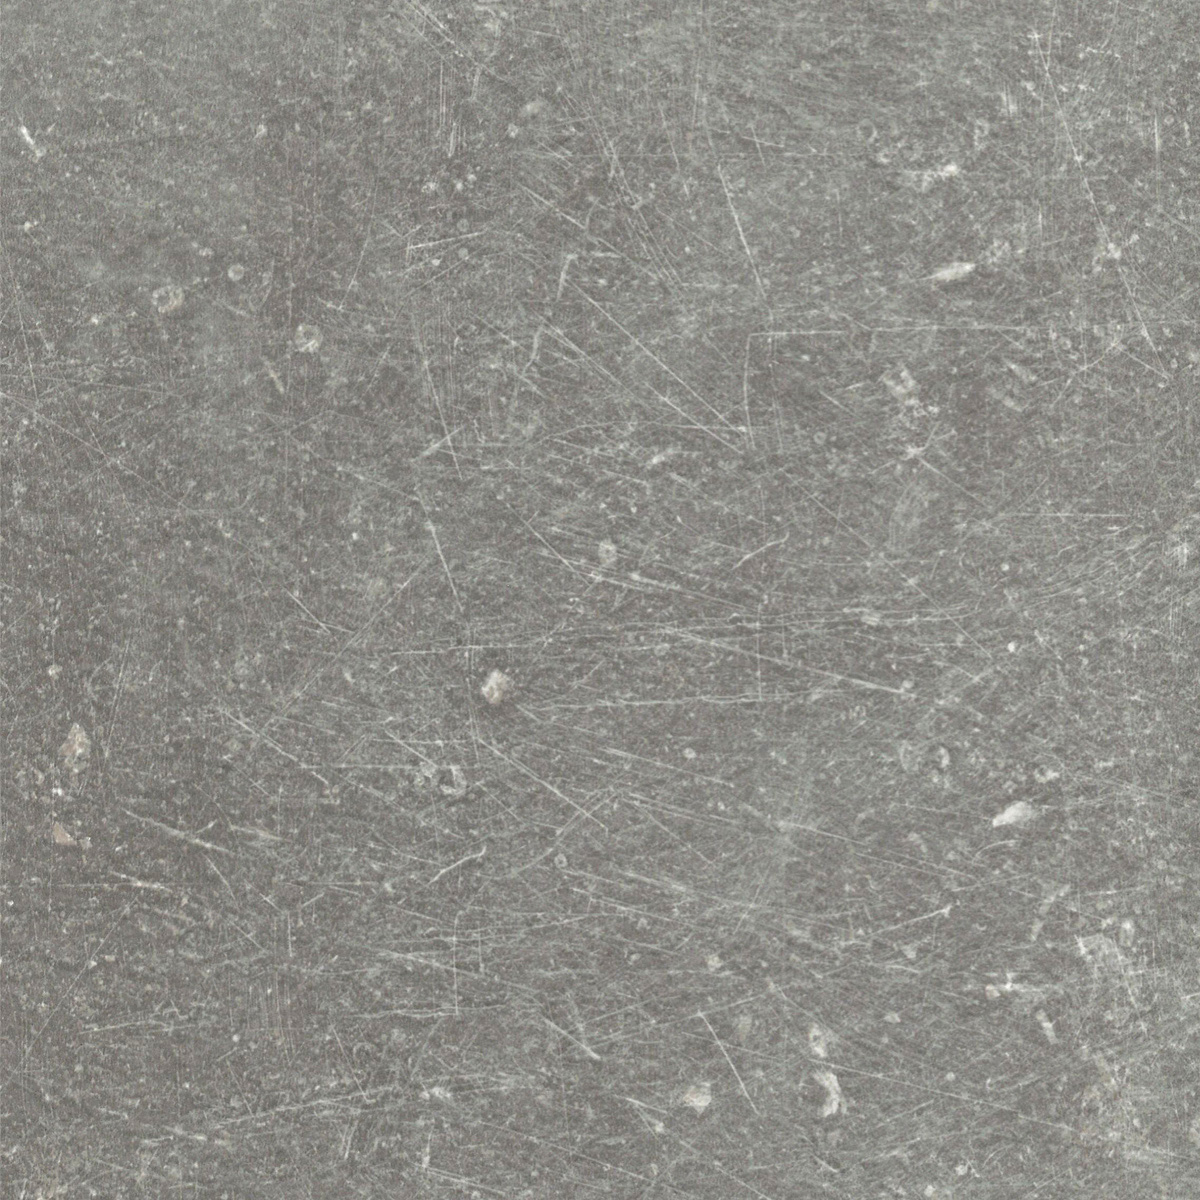 Ausschnitt der Sela Tischplatte Scratched Grey.